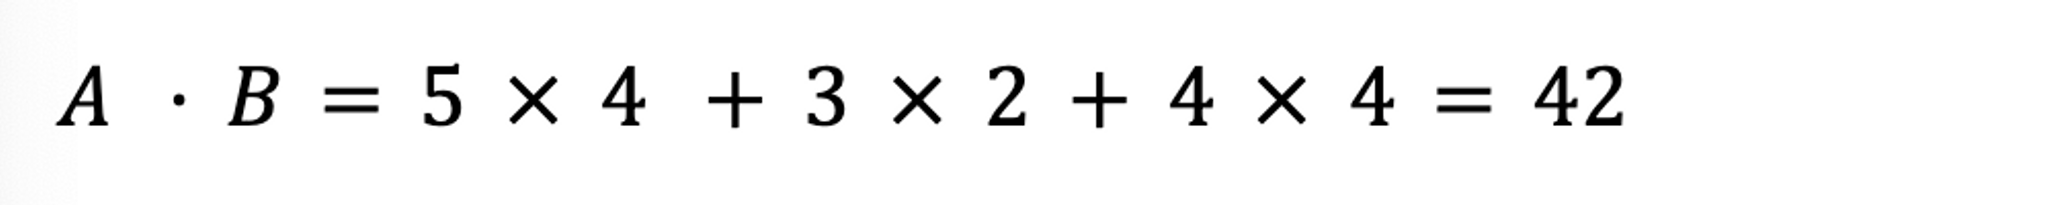 Cosine Similarity Numerator Example